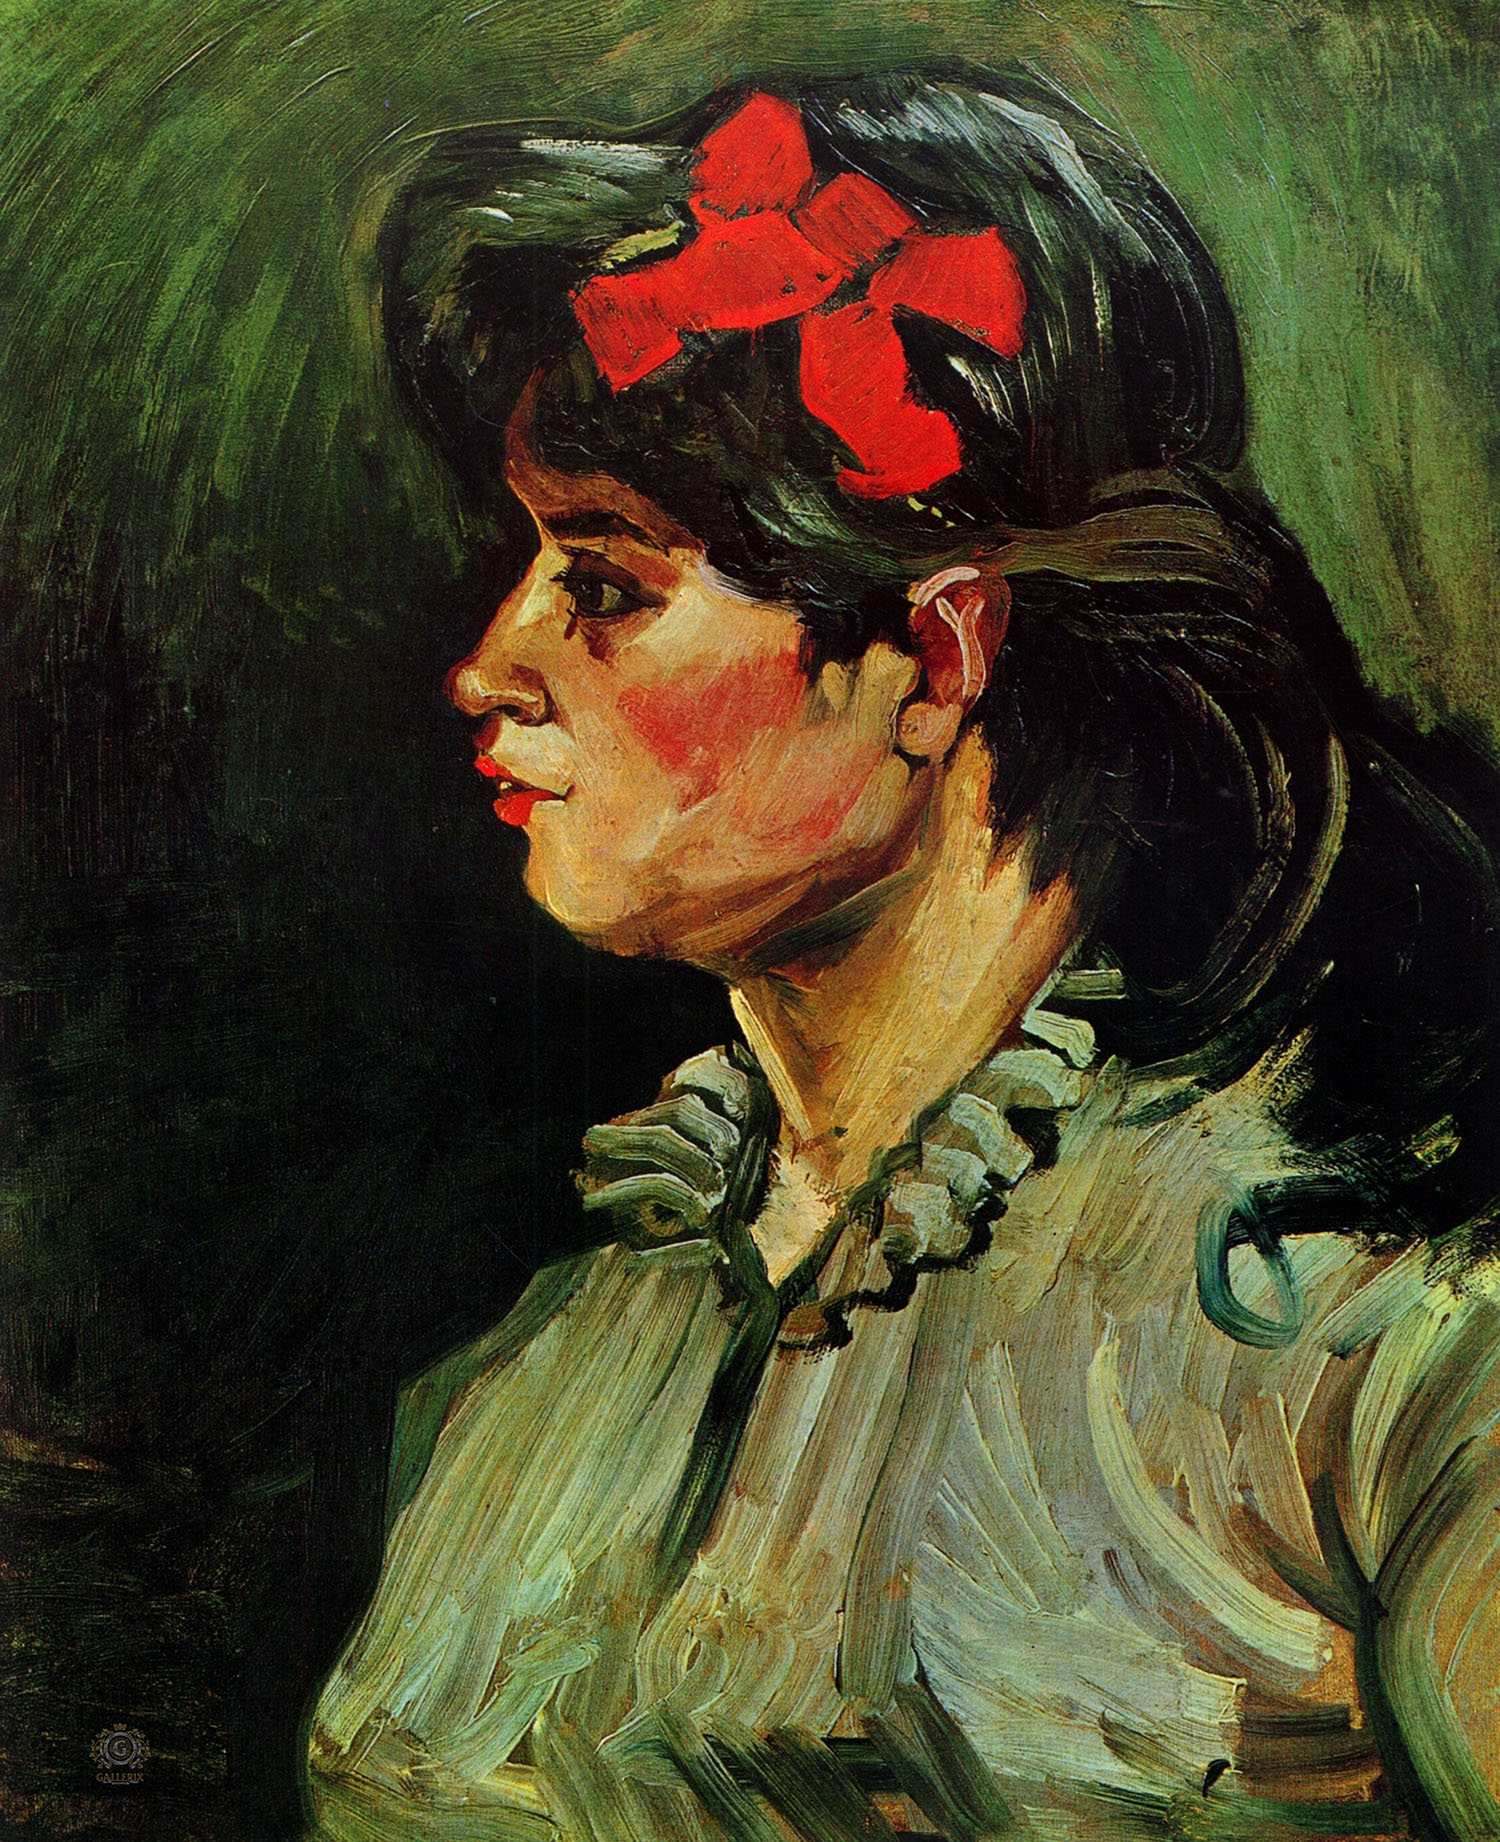 Винсент Ван Гог. "Портрет женщины с красной лентой". 1885. Частная коллекция.